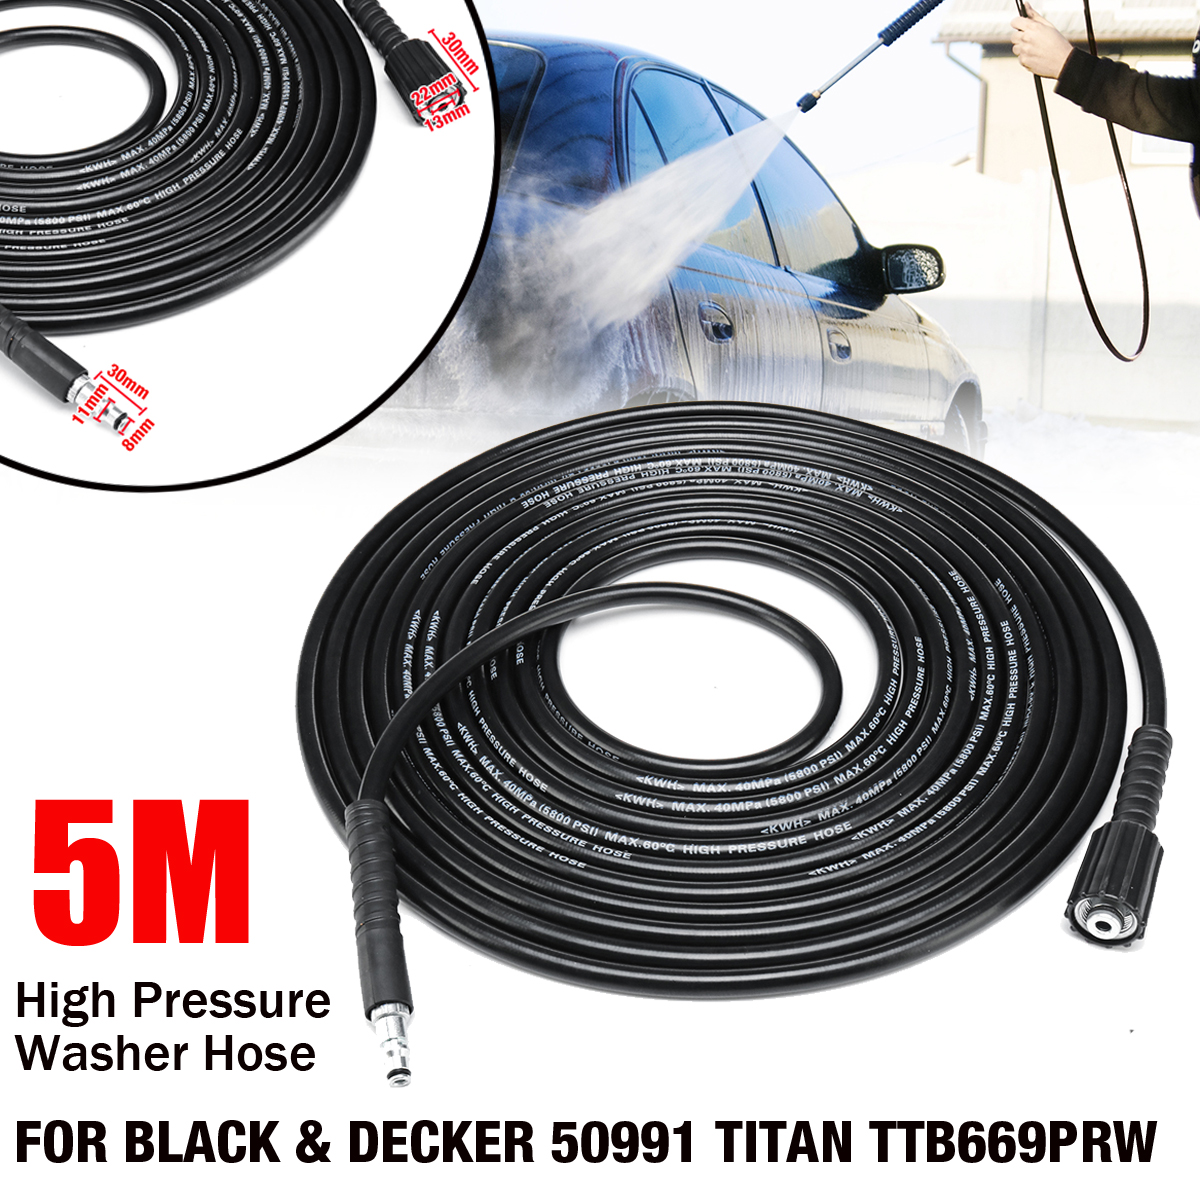 5M-High-Pressure-Water-Cleaner-Washer-Hose-for-BLACK--DECKER-50991-TITAN-TTB669PRW-1415136-1